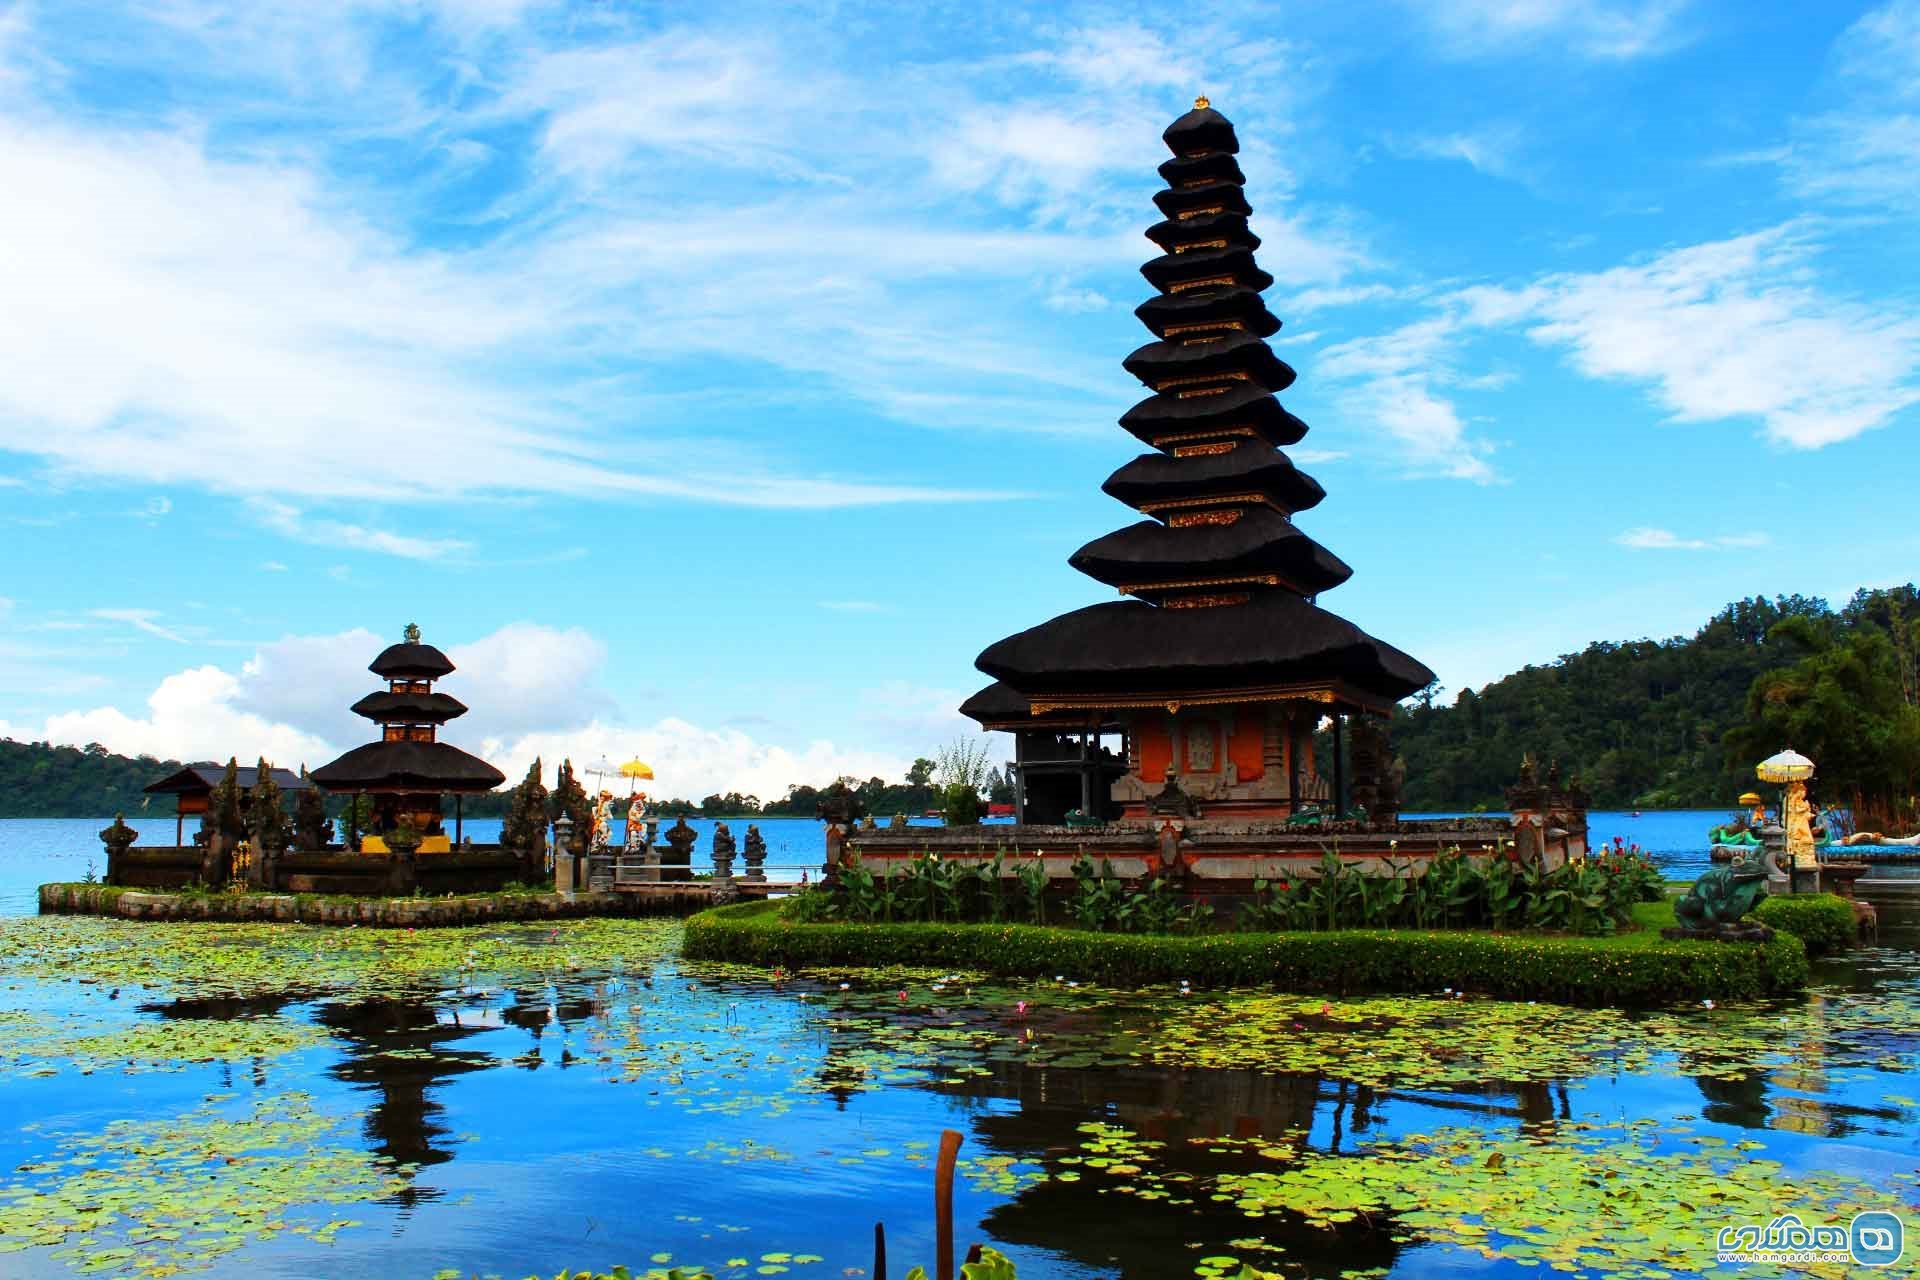 روستایی که به واسطه زیبایی شهرت جهانی یافته است، ابود در کشور اندونزی